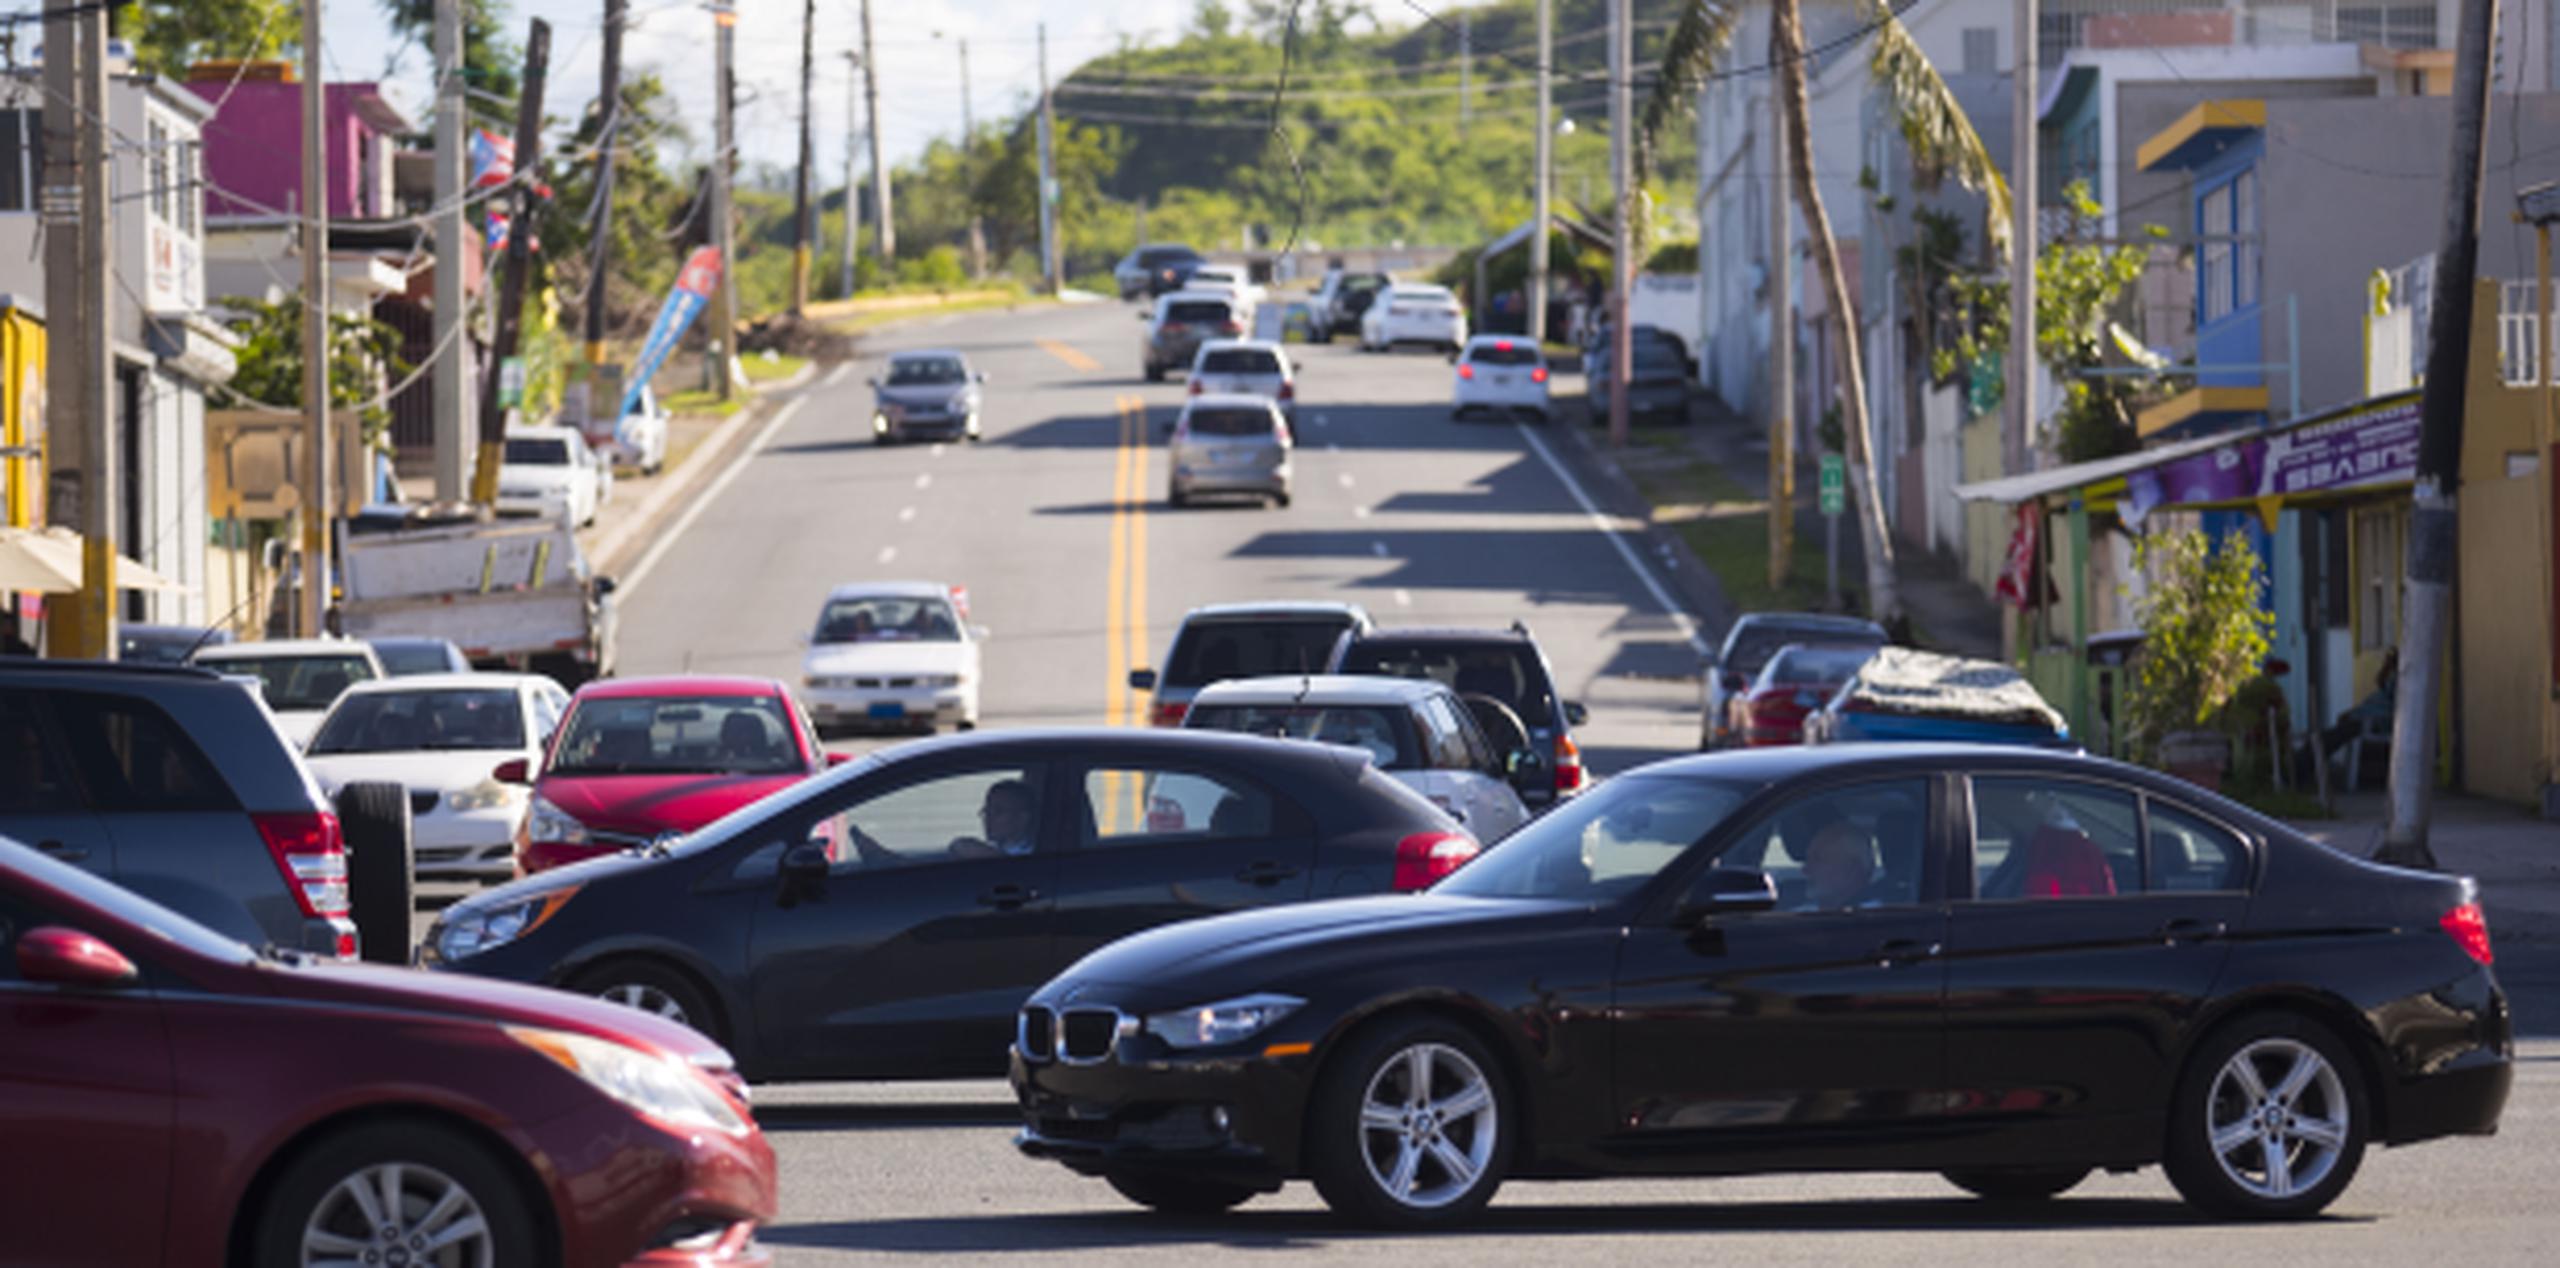 Según las estadísticas preliminares del Negociado de Patrullas de Carreteras, en Puerto Rico hay apenas 70 semáforos en funcionamiento, de un total de 310, lo que representa solo un 22.58% del total instalados. (tonito.zayas@gfrmedia.com)